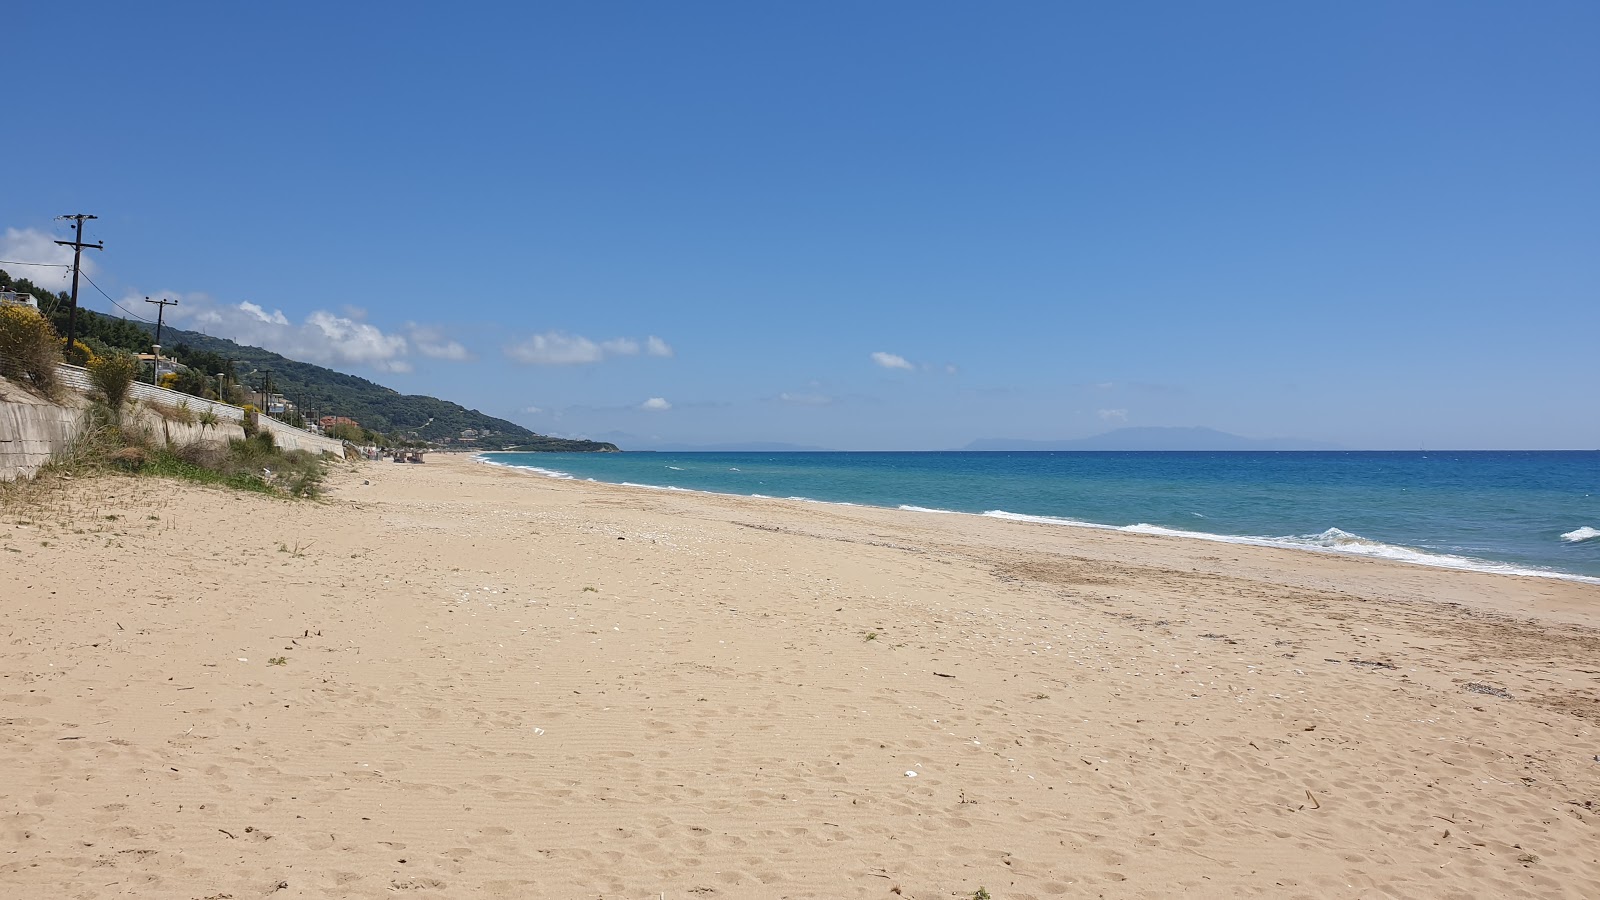 Zdjęcie loutsas beach - popularne miejsce wśród znawców relaksu